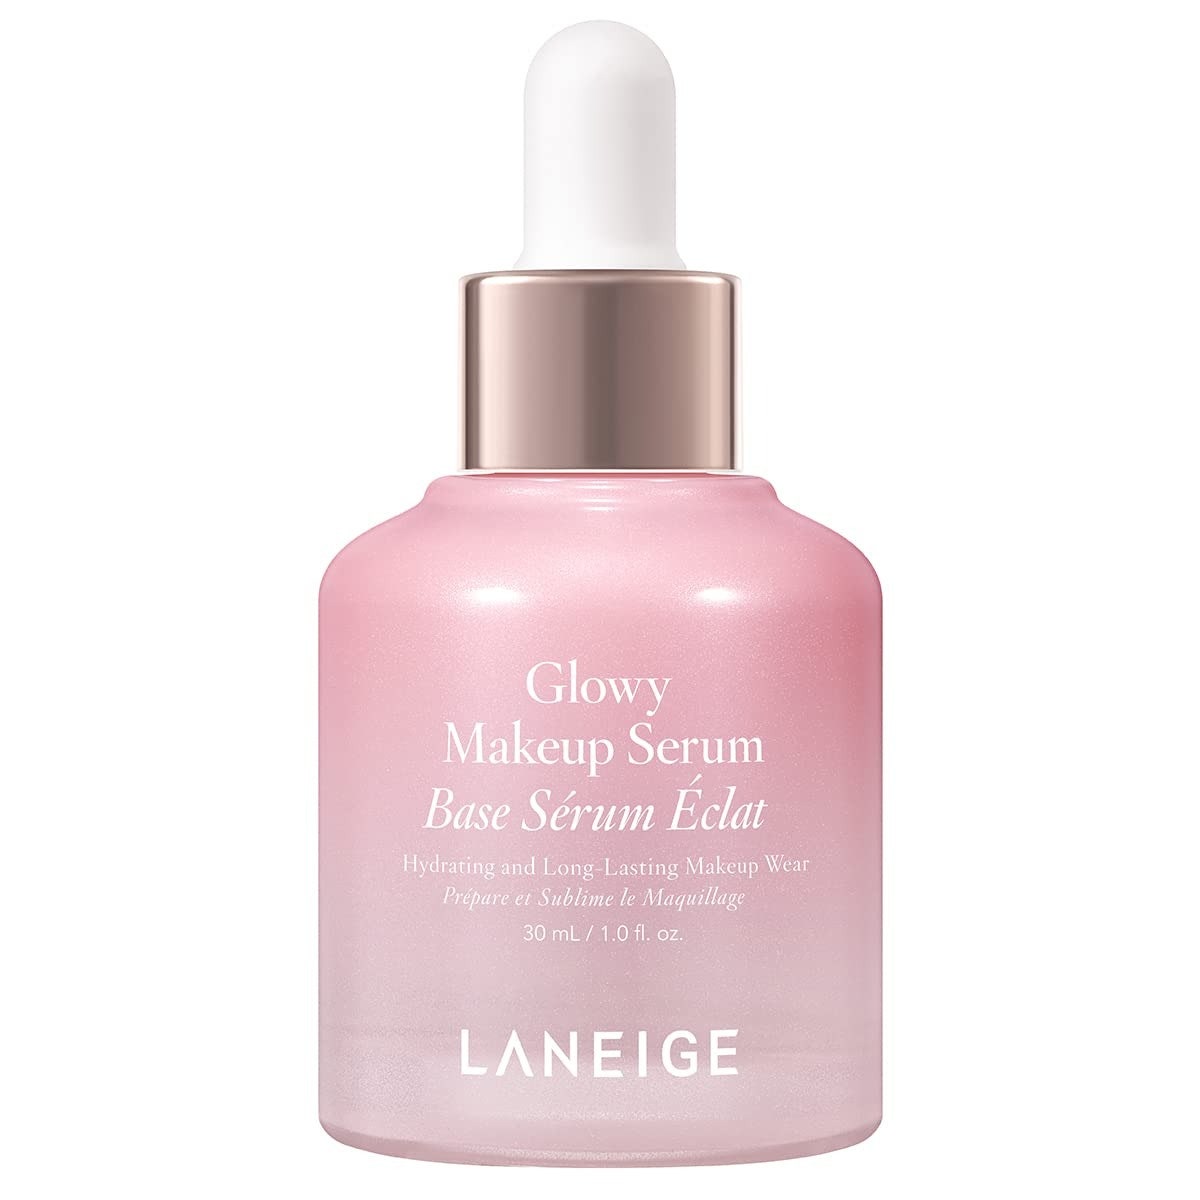 Laneige Glowy Makeup Serum rosa Serumflasche auf weißem Hintergrund